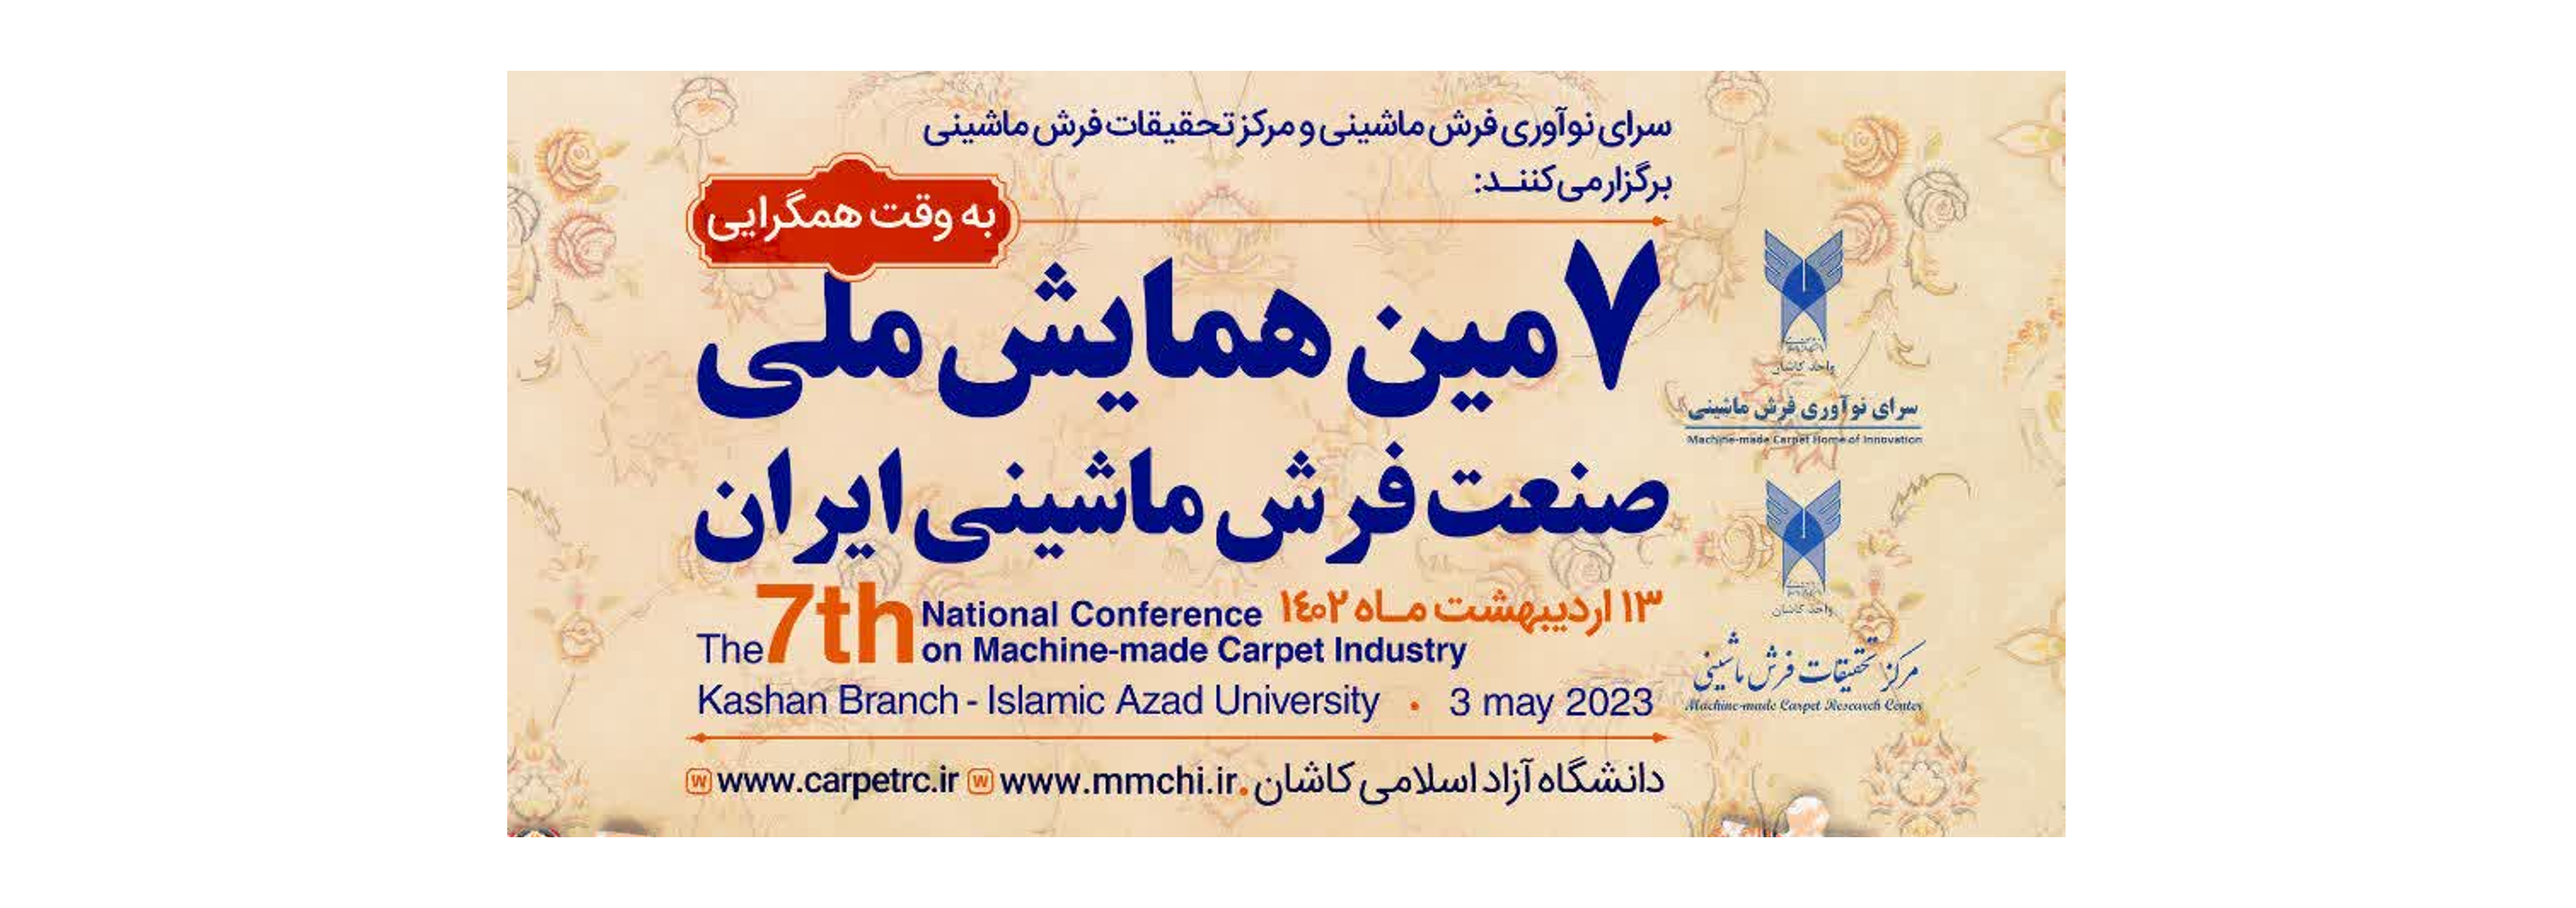 هفتمین همایش ملی صنعت فرش ماشینی ایران